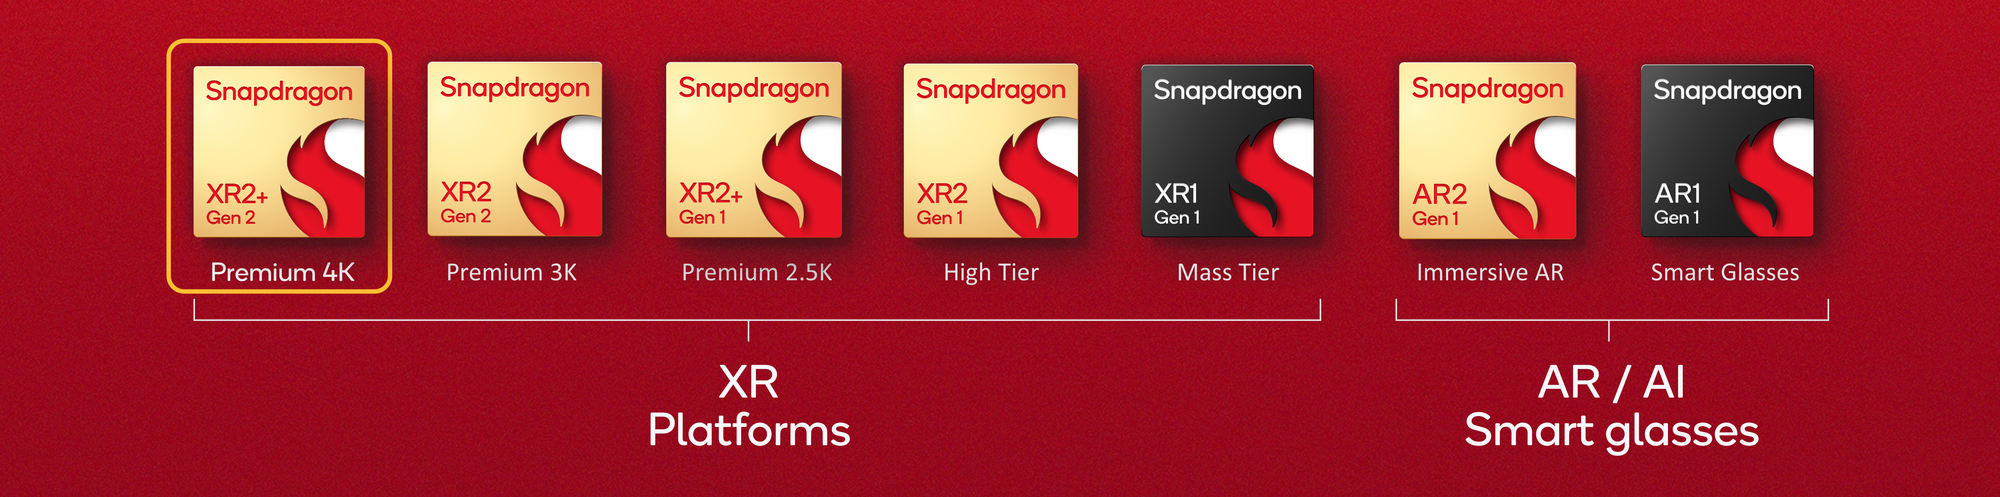 Snapdragon XR2+ Gen 2 annoncé pour les casques Samsung et plus